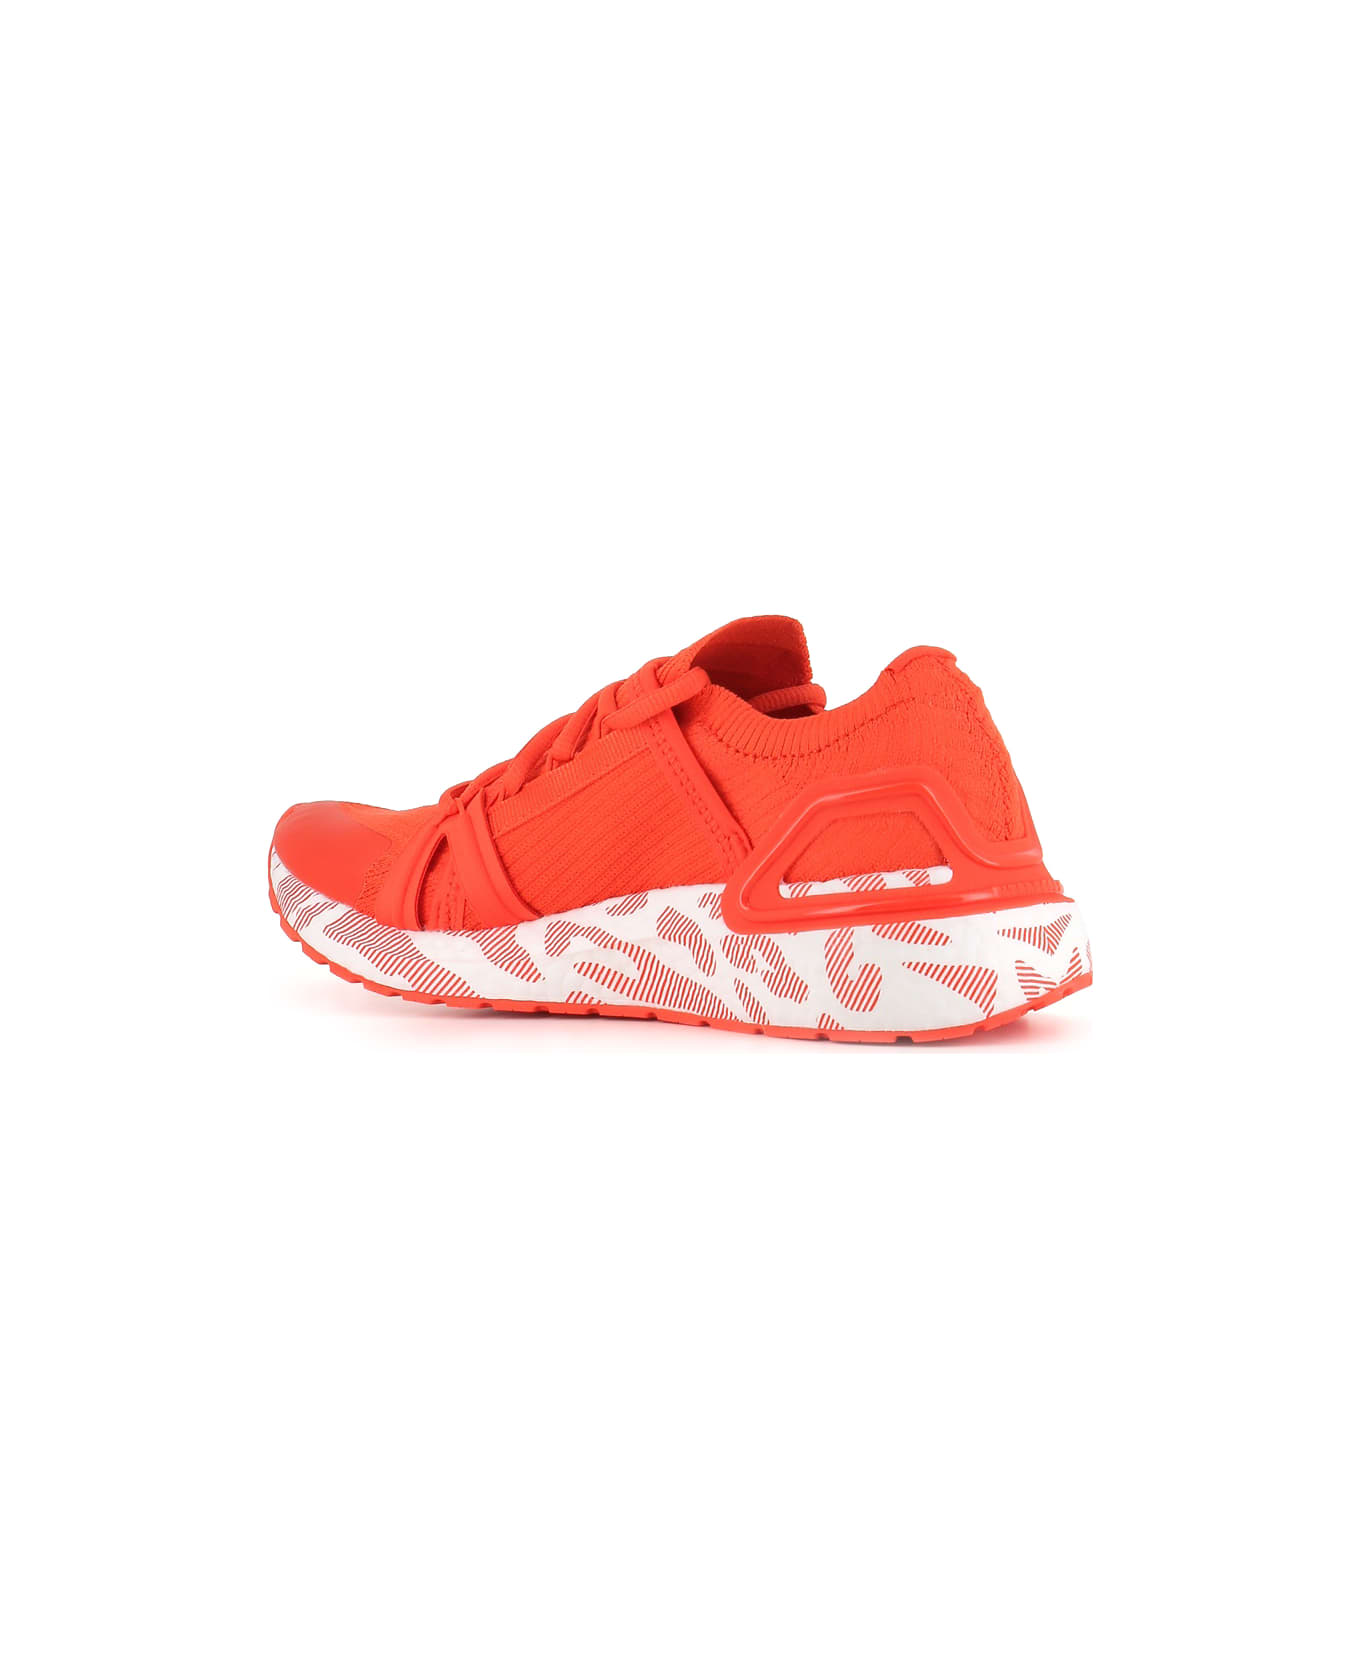 Adidas by Stella McCartney Sneakers Asmc Ultraboost 20 - Arancio fluo スニーカー